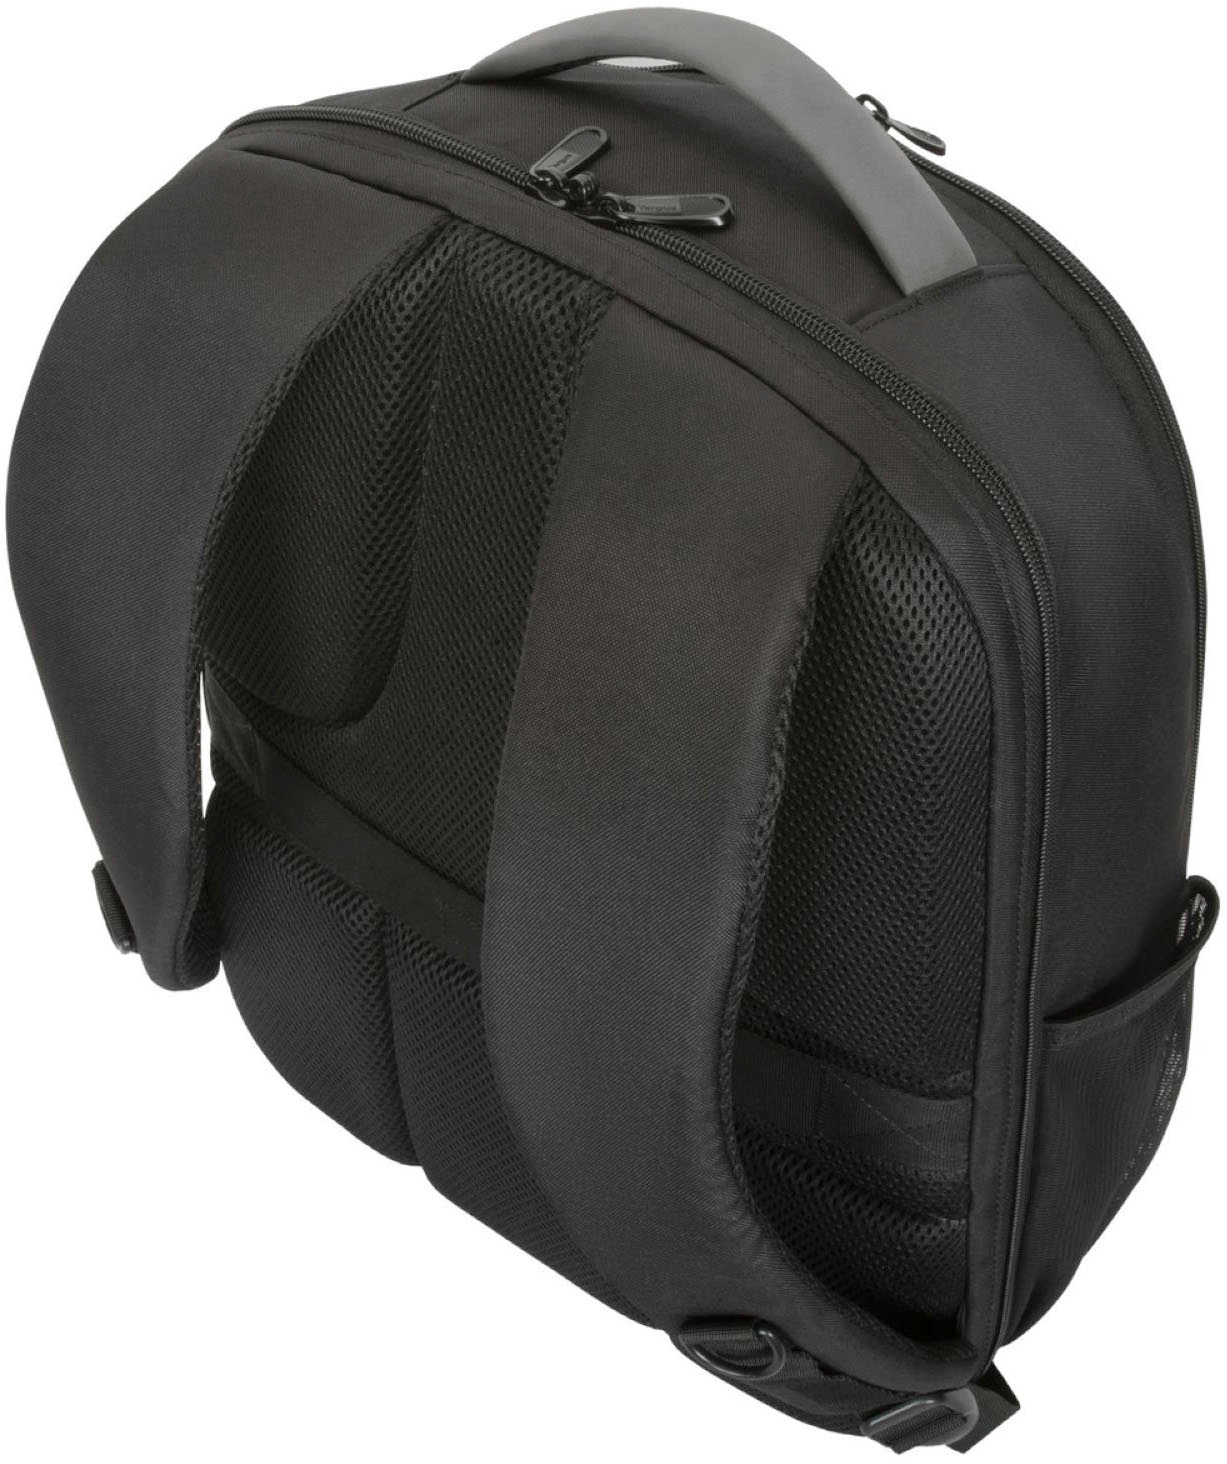 Best Buy: Targus 15–16” Exhibition Backpack Black TBB942GL